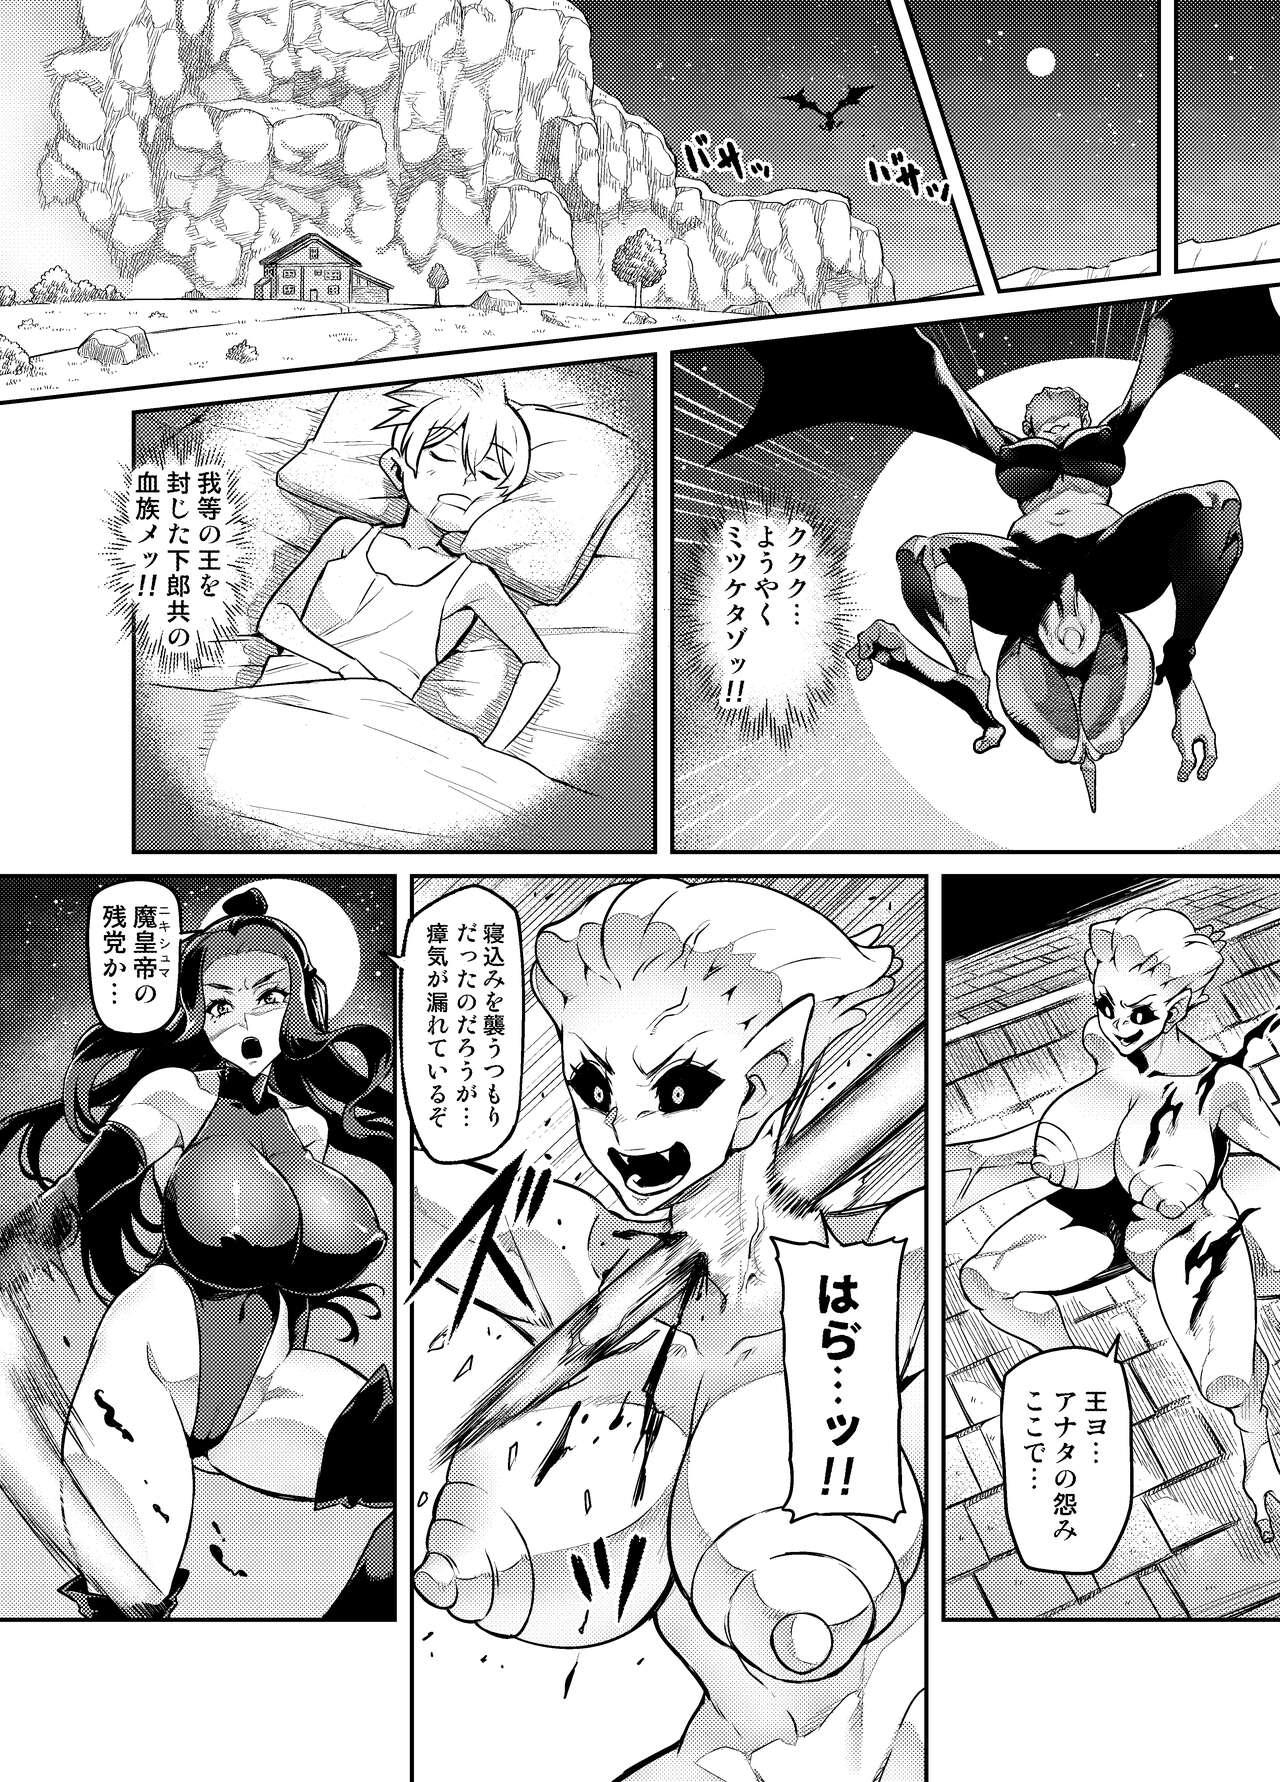 Freak [Hatoba Akane] Maken no Elena ~Katte no Omoibito ni Takusareta Ko to no Koi ni Ochiru Majo~ Ch. 1-9 [Ongoing] - Original Brunette - Page 6